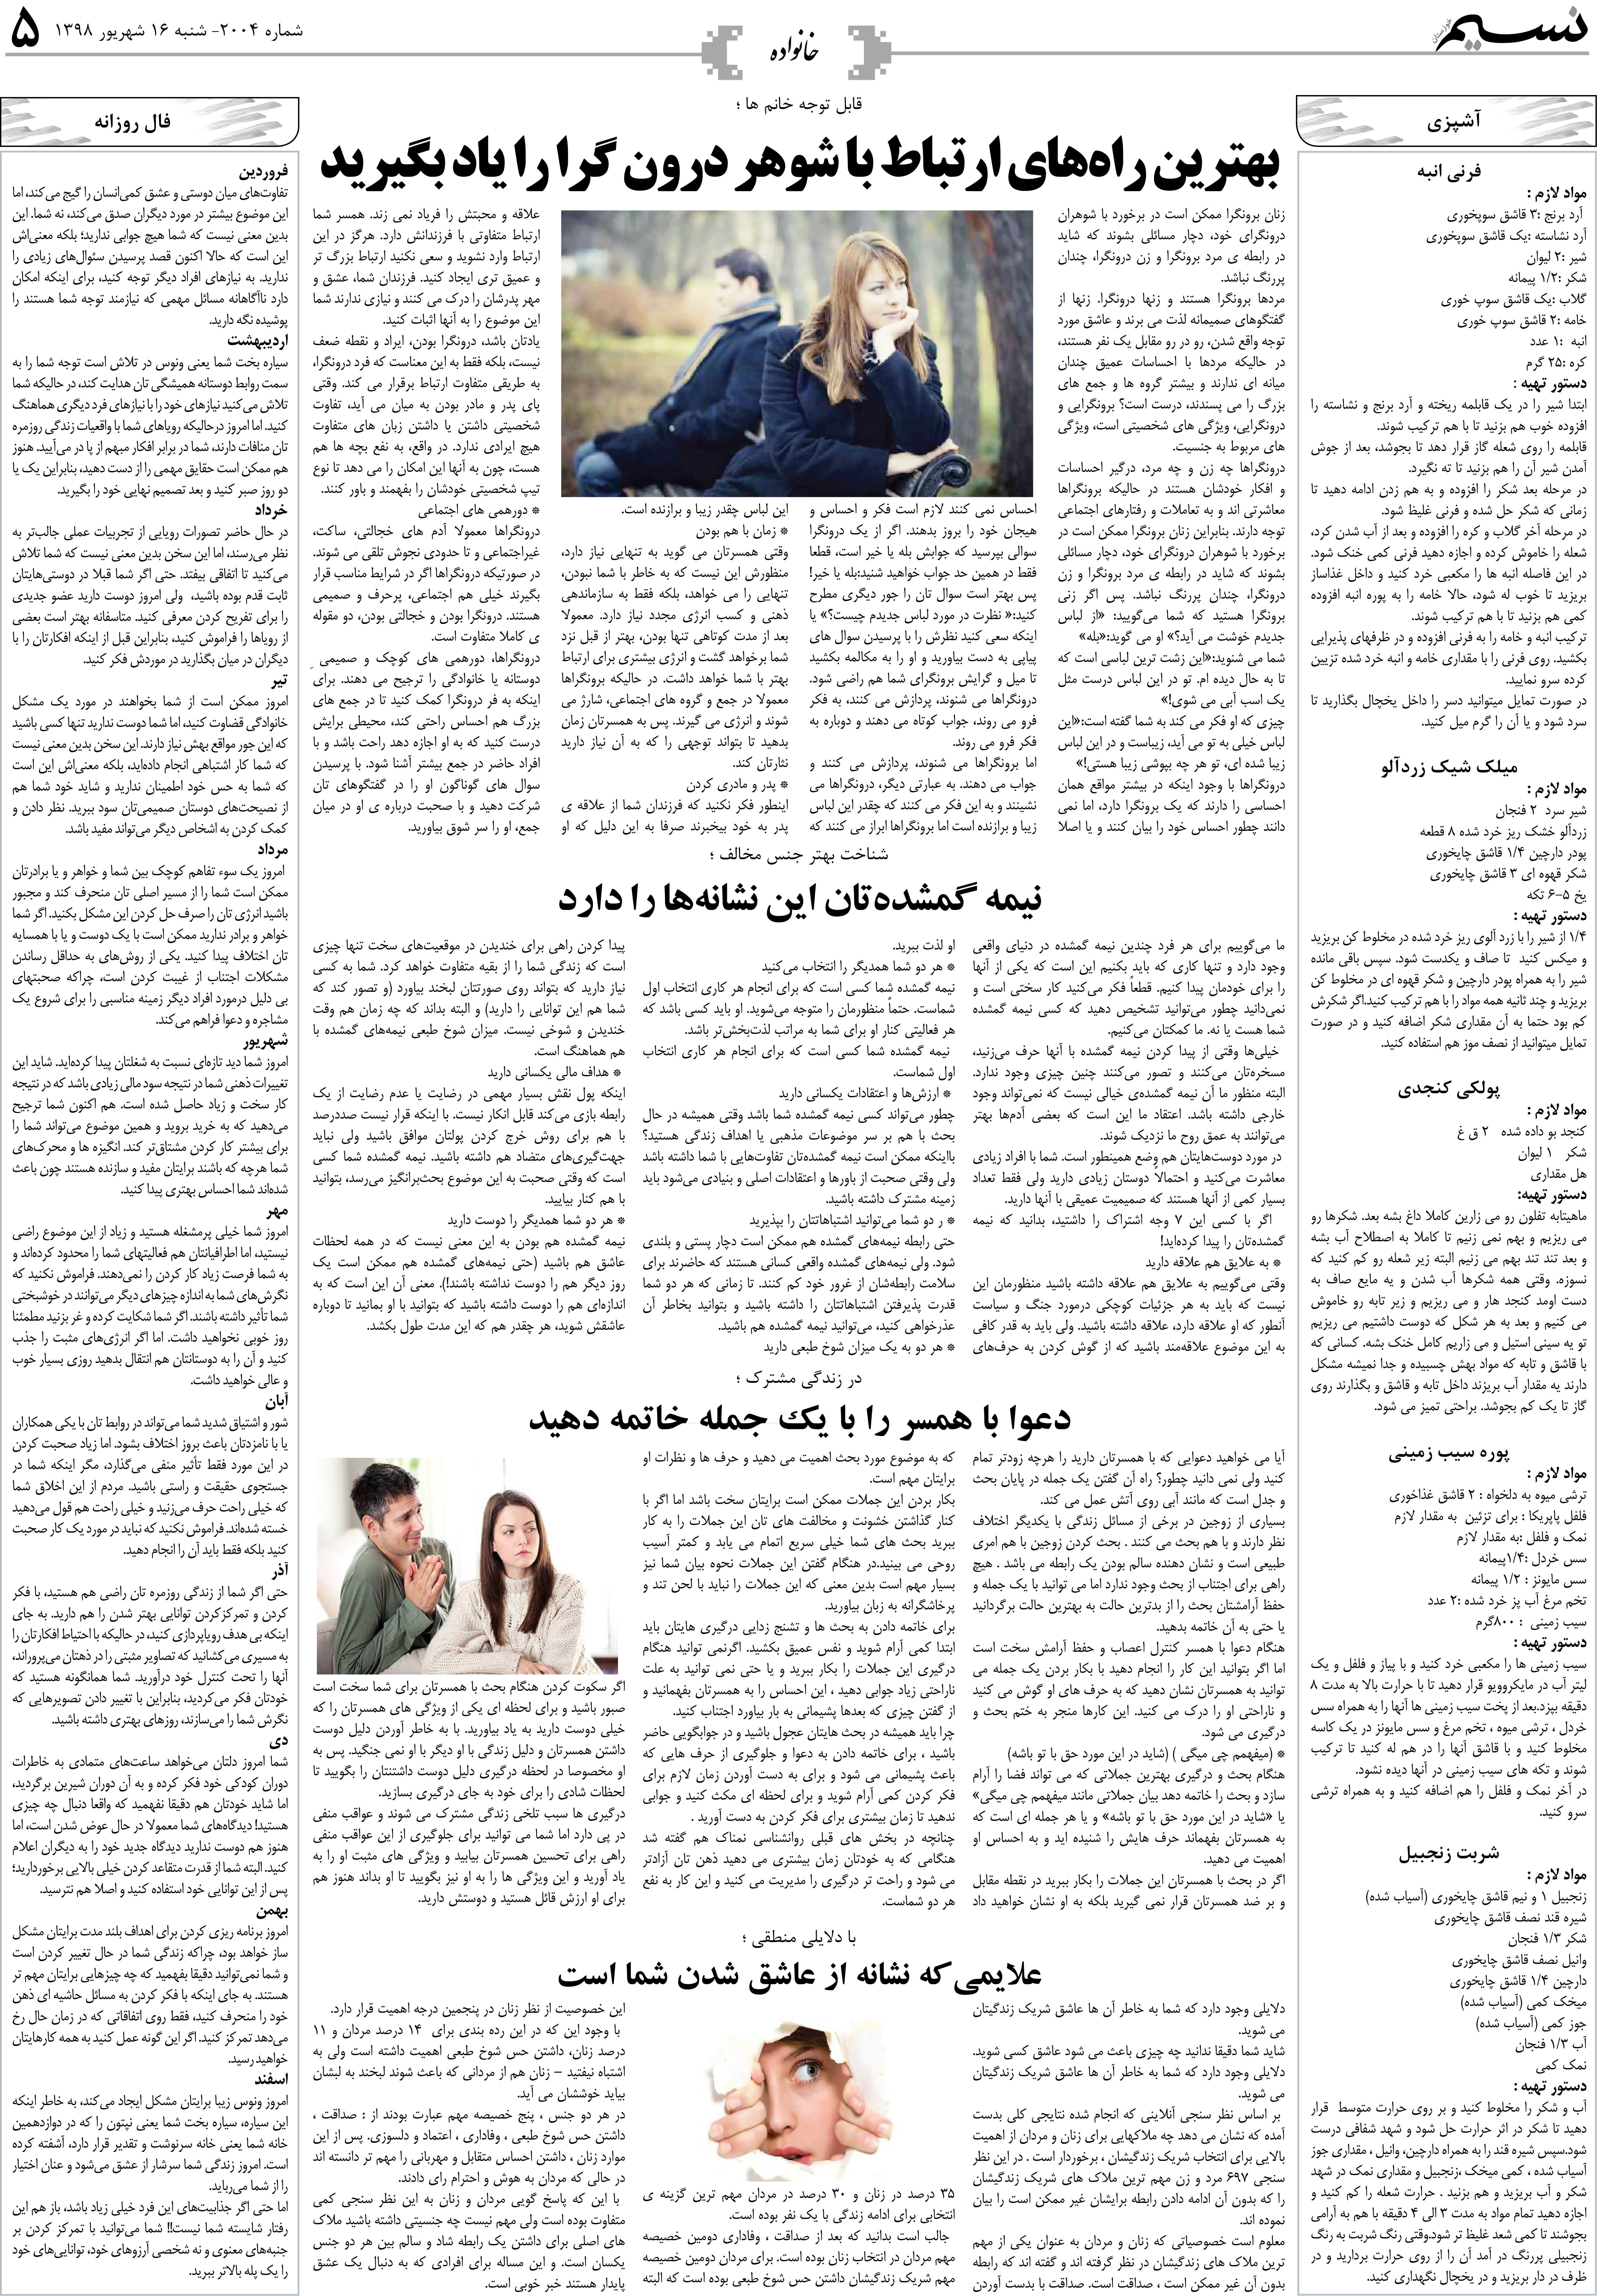 صفحه خانواده روزنامه نسیم شماره 2004